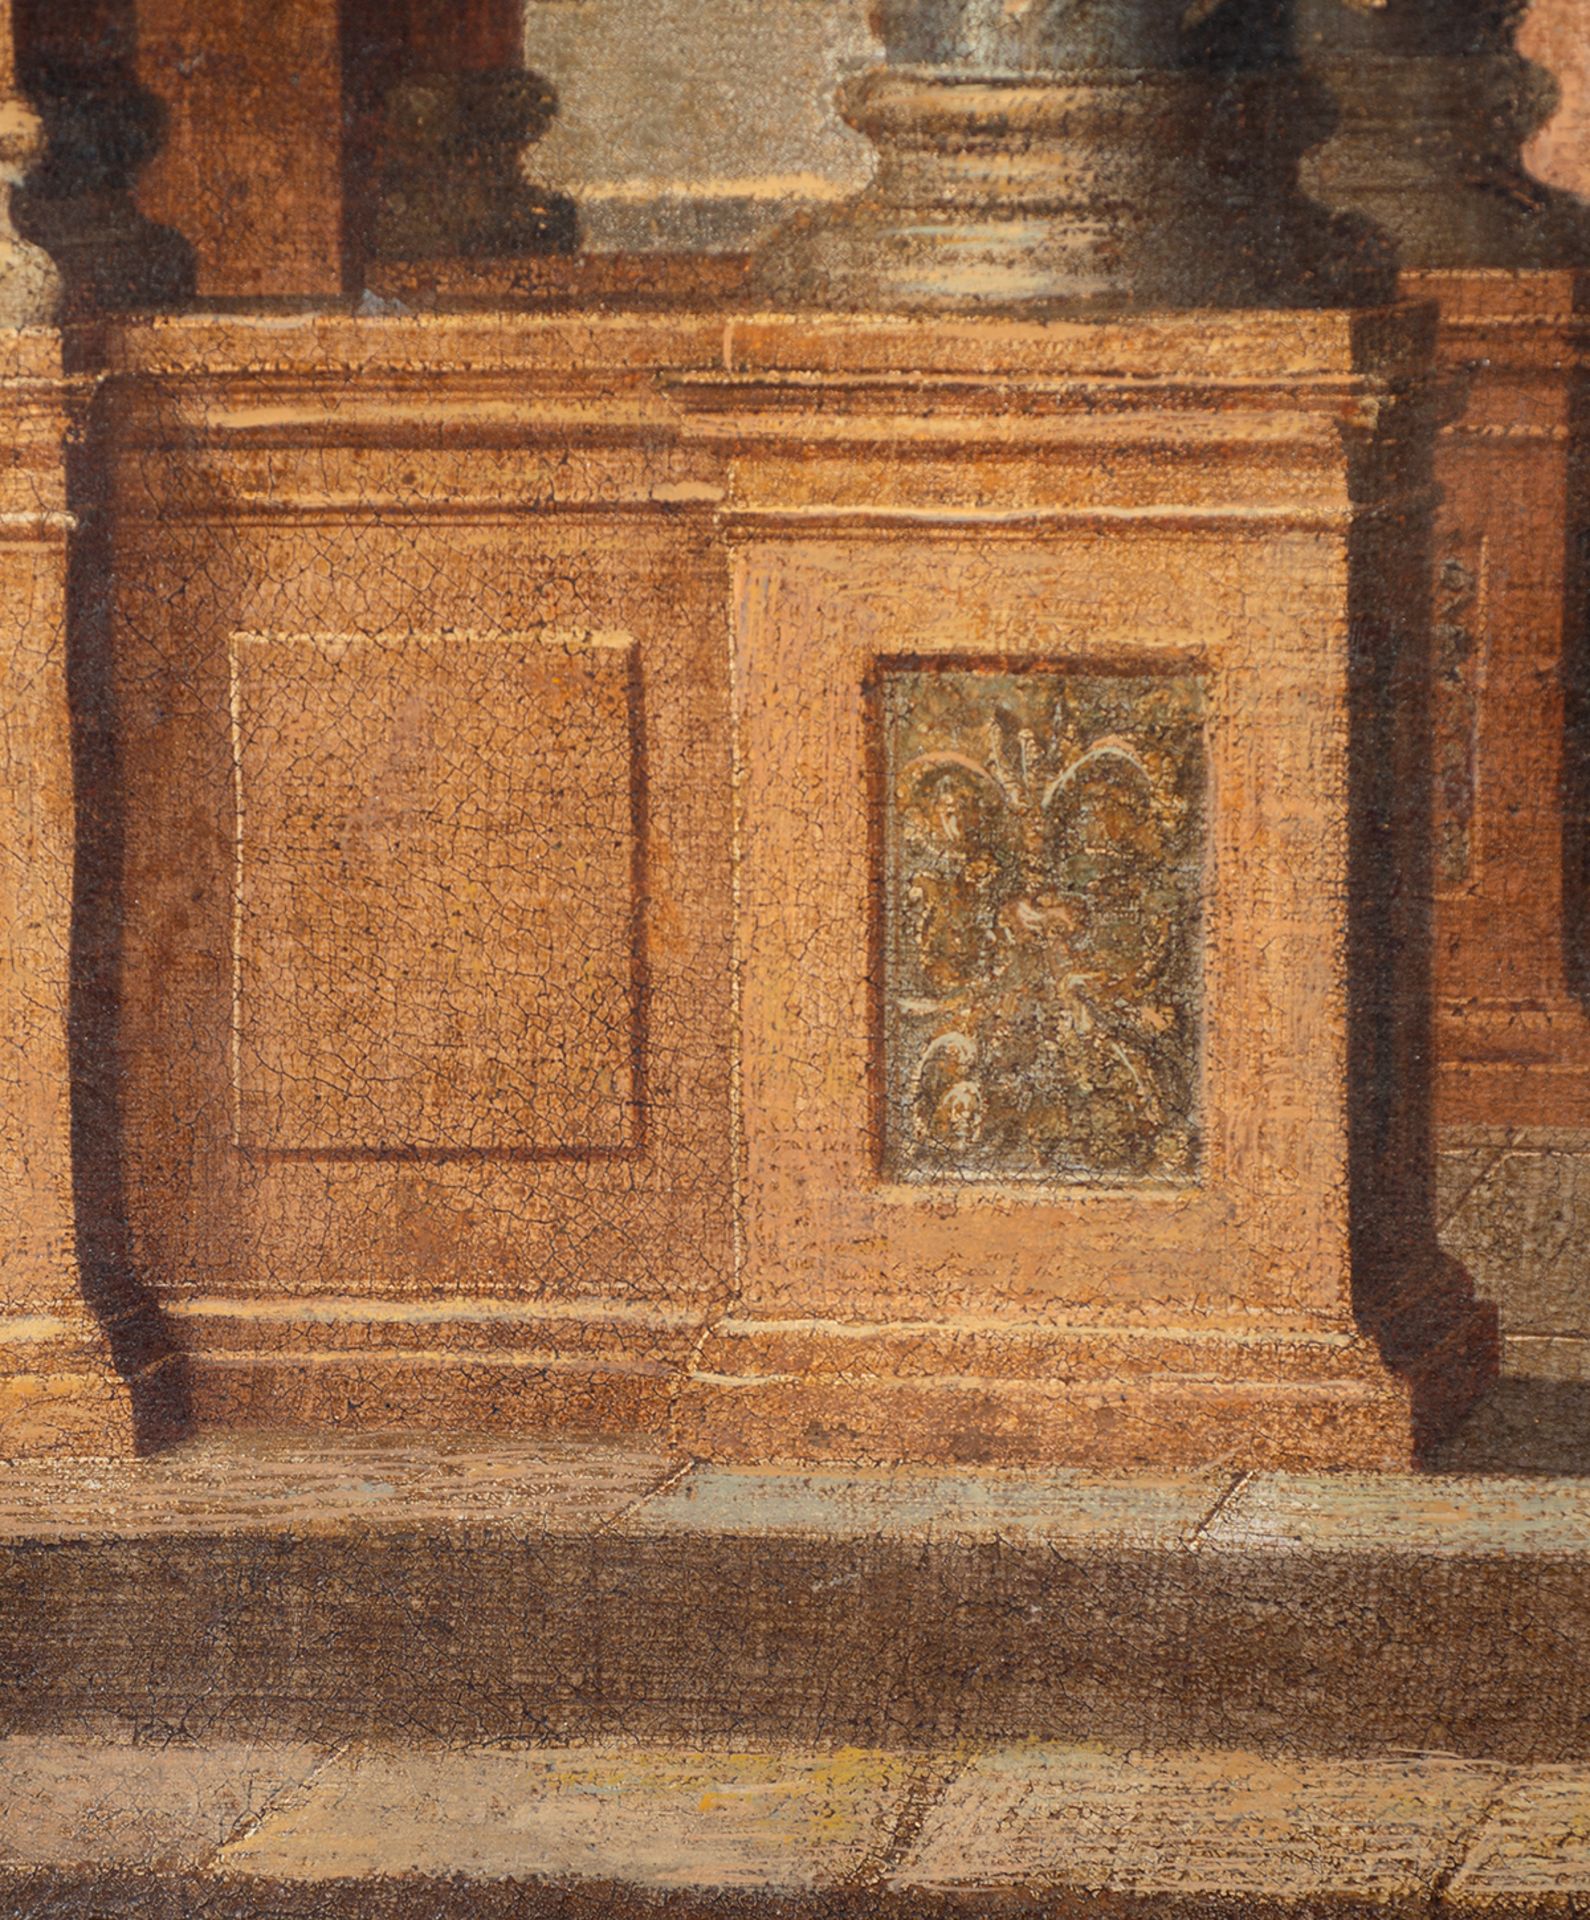 Capriccio, 17th century Italian school - Bild 4 aus 5